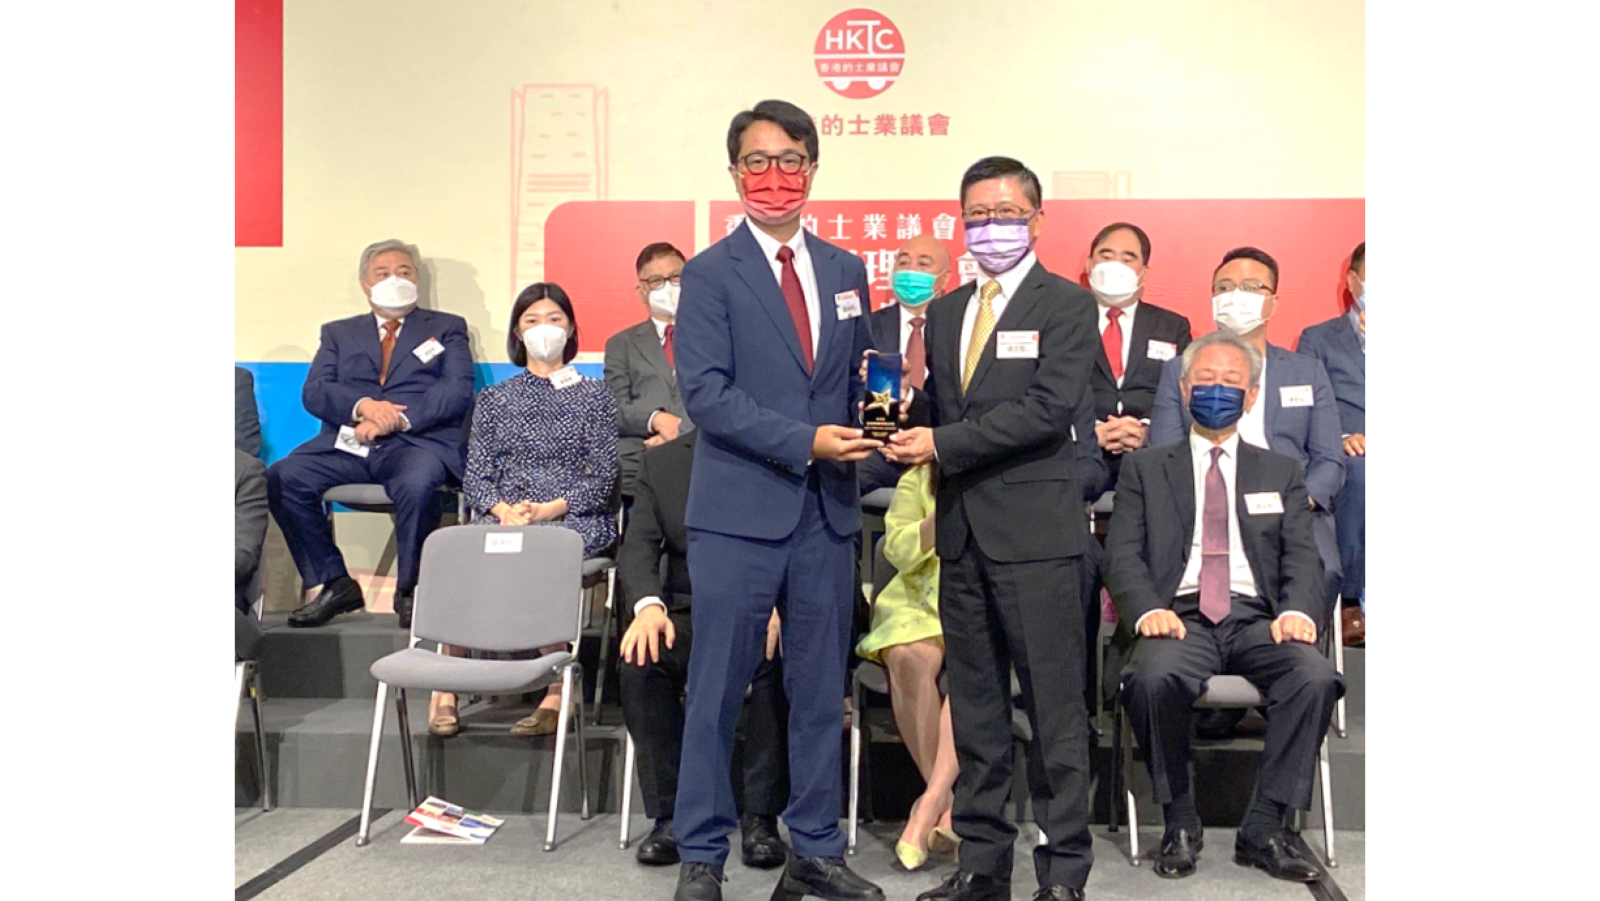 FTLife receives Appreciation Award from Hong Kong Taxi Council
                                        